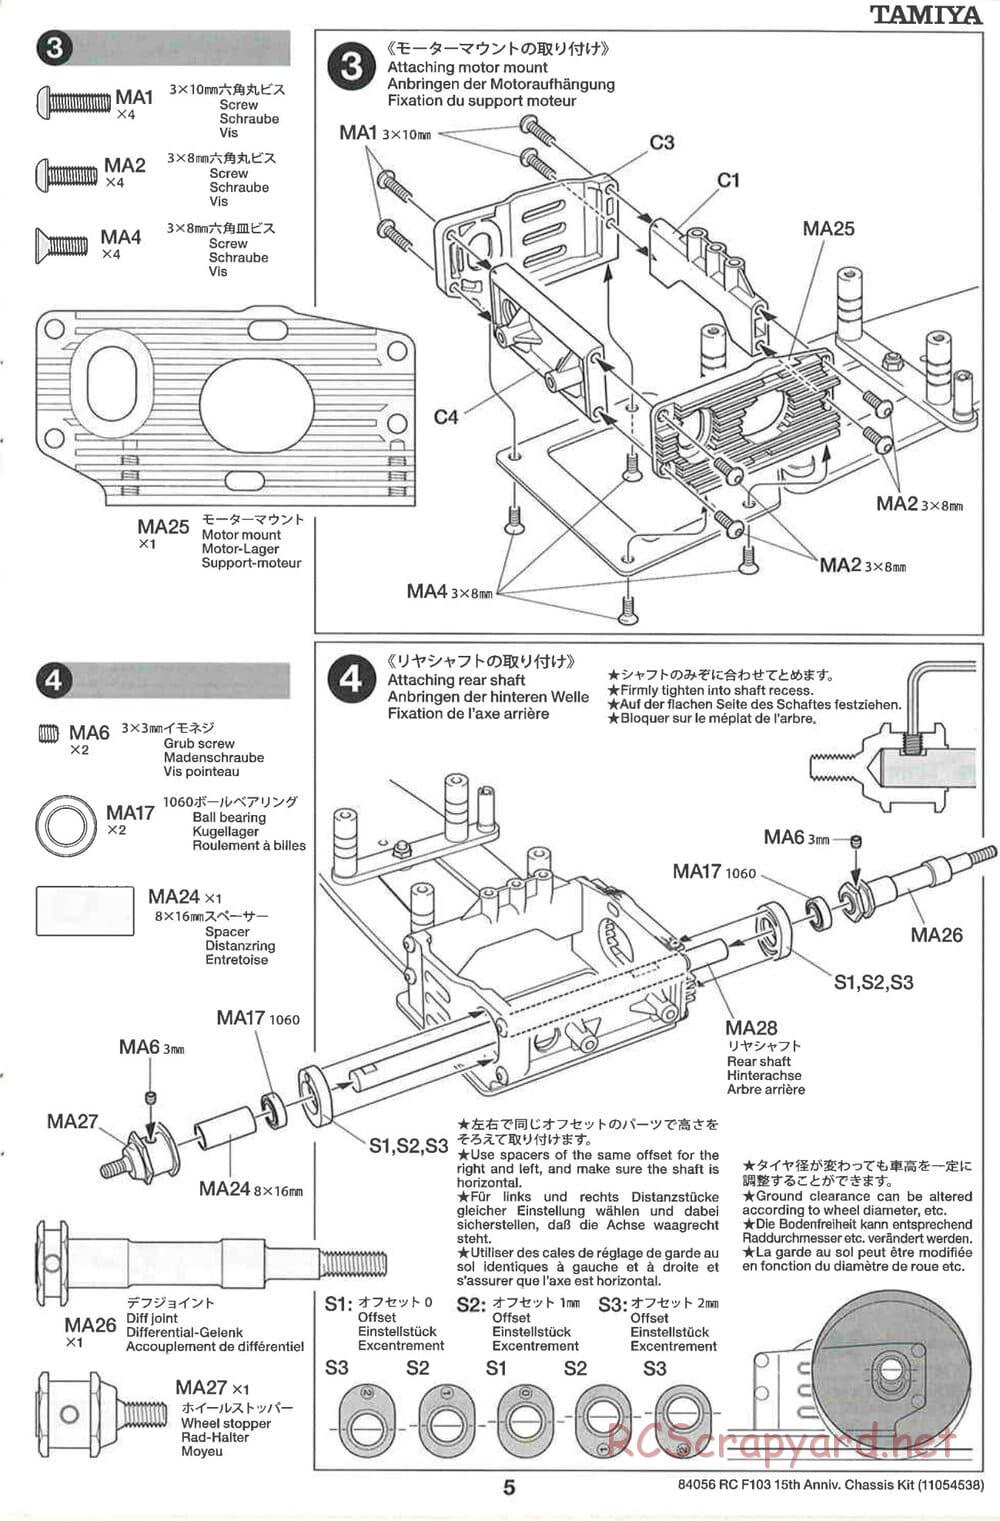 Tamiya - F103 15th Anniversary Chassis - Manual - Page 5